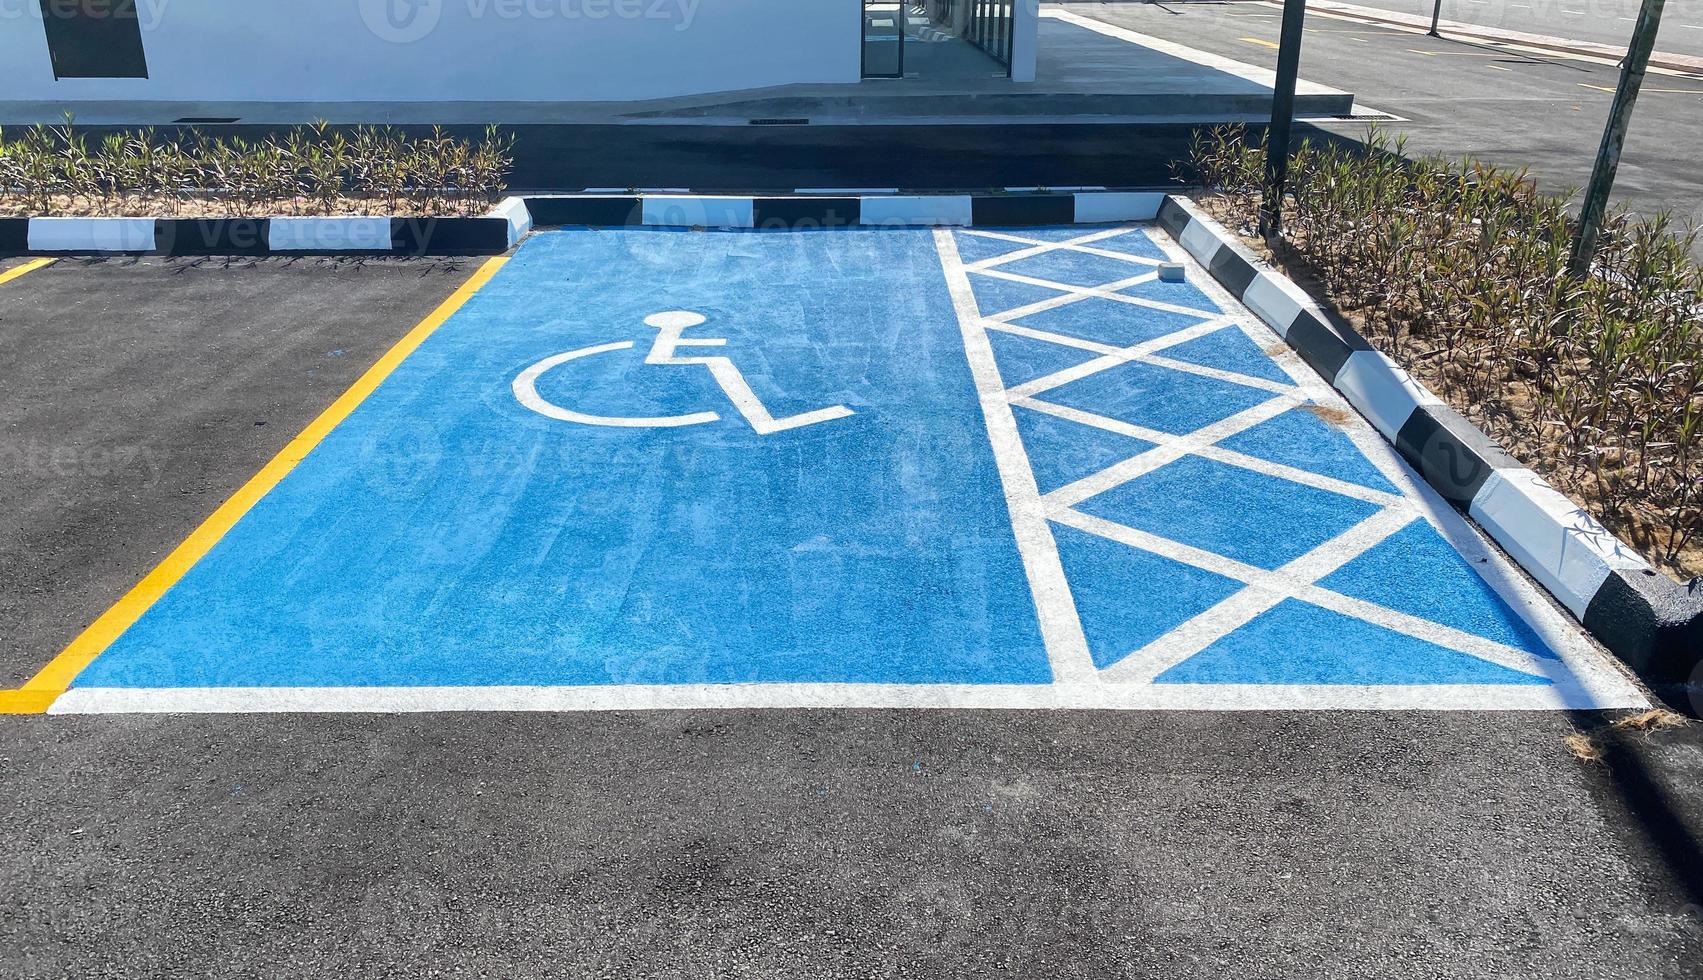 vista de um estacionamento para deficientes em tinta azul brilhante foto